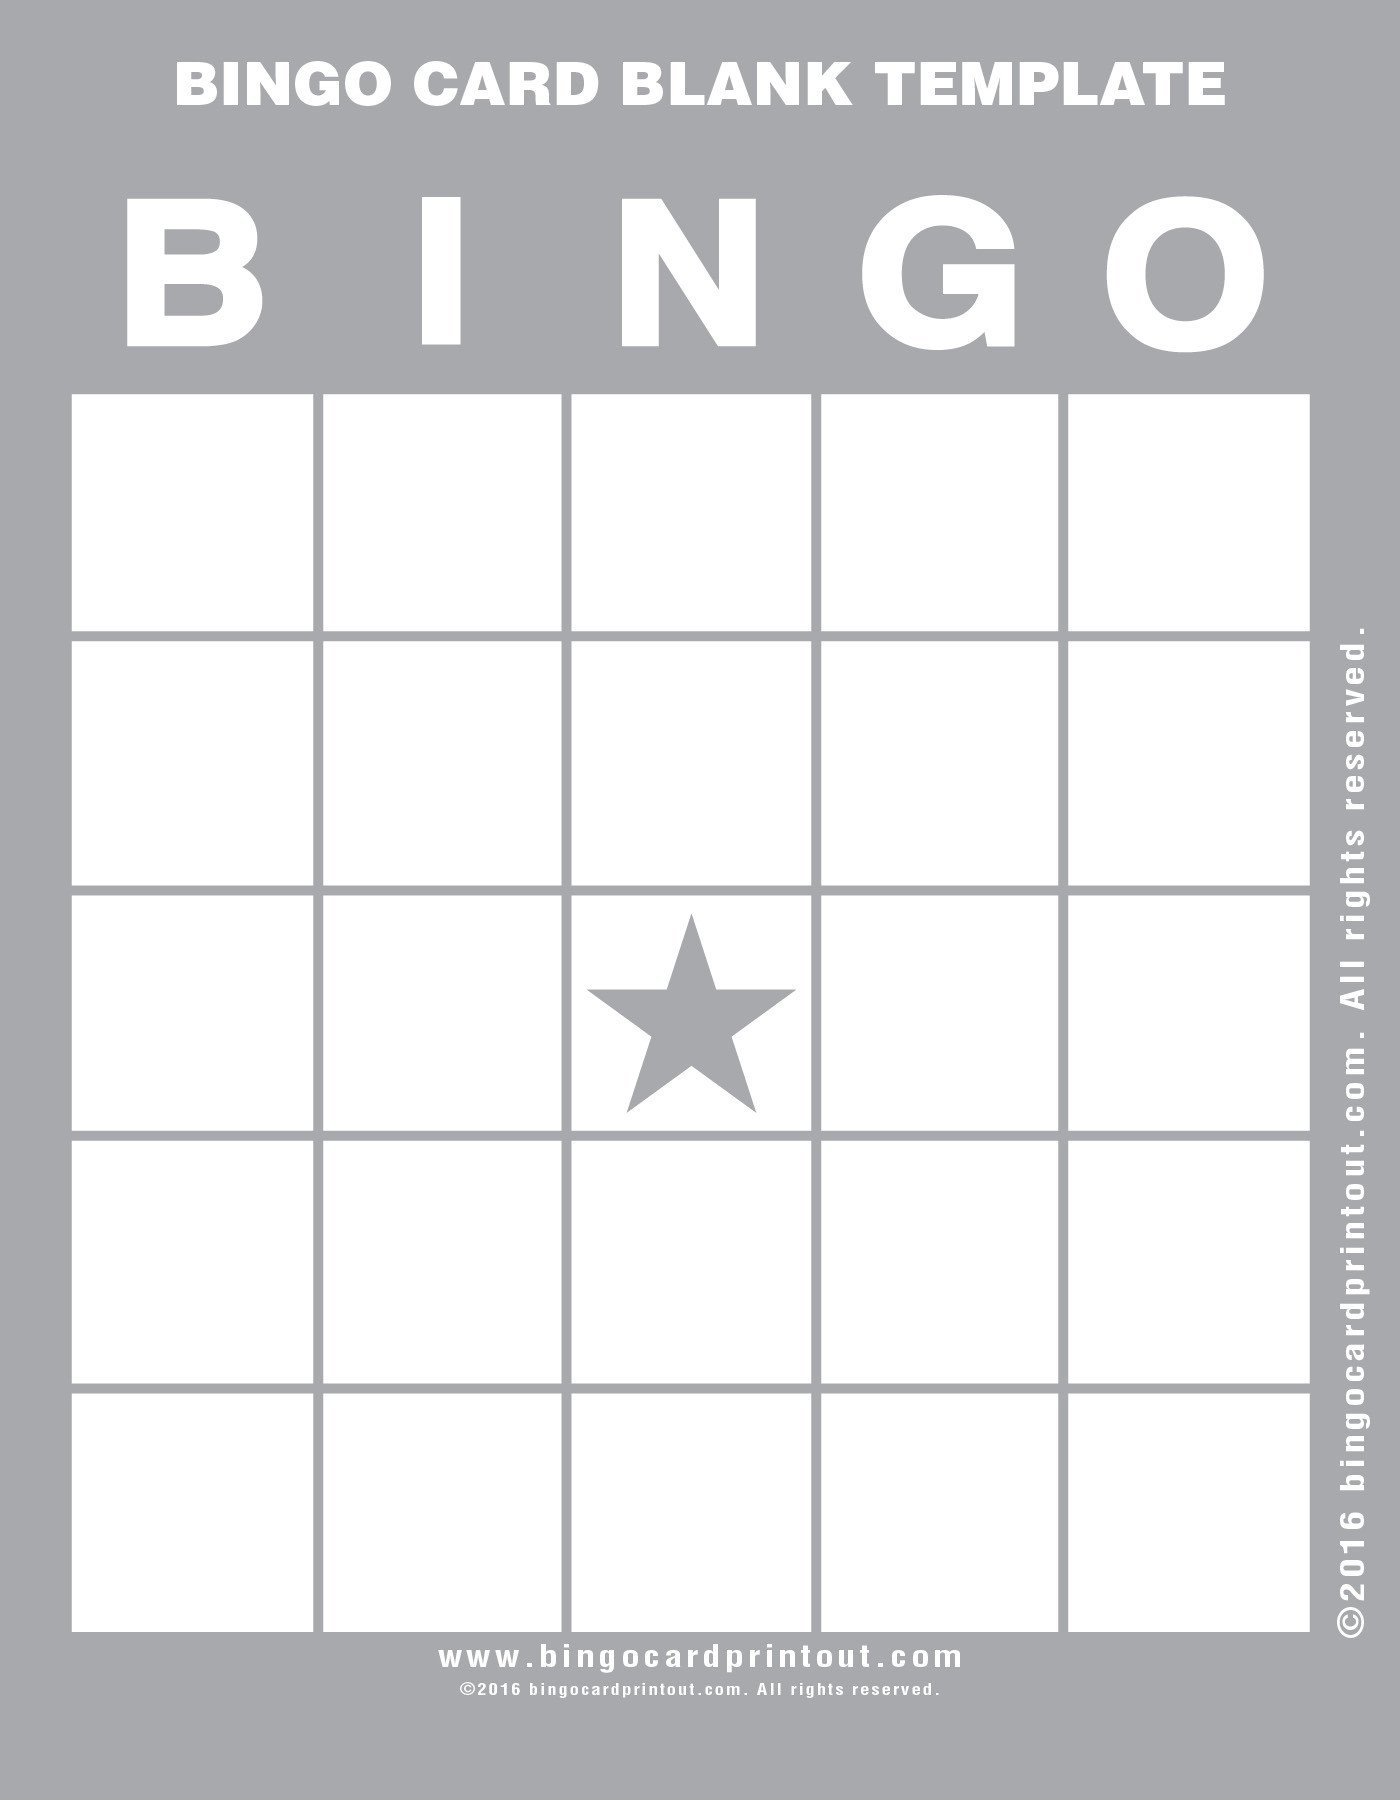 Bingo Card Blank Template BingoCardPrintout